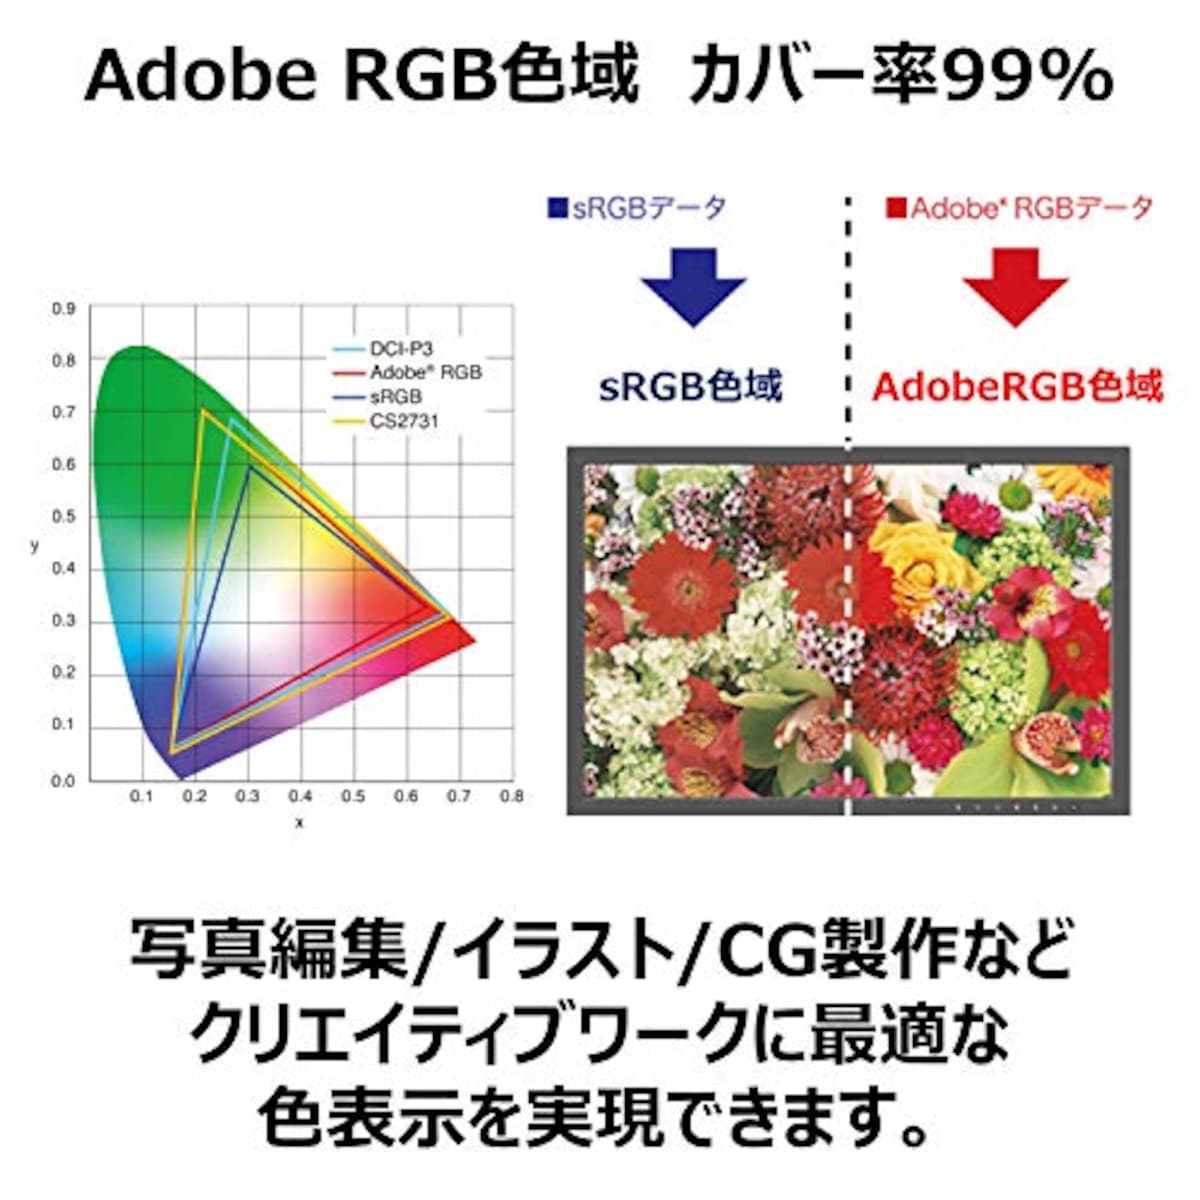  EIZO ColorEdge CS2420-Z (24.1型カラーマネージメント液晶モニター/UXGA Wide/Adobe RGB 99%/)画像2 